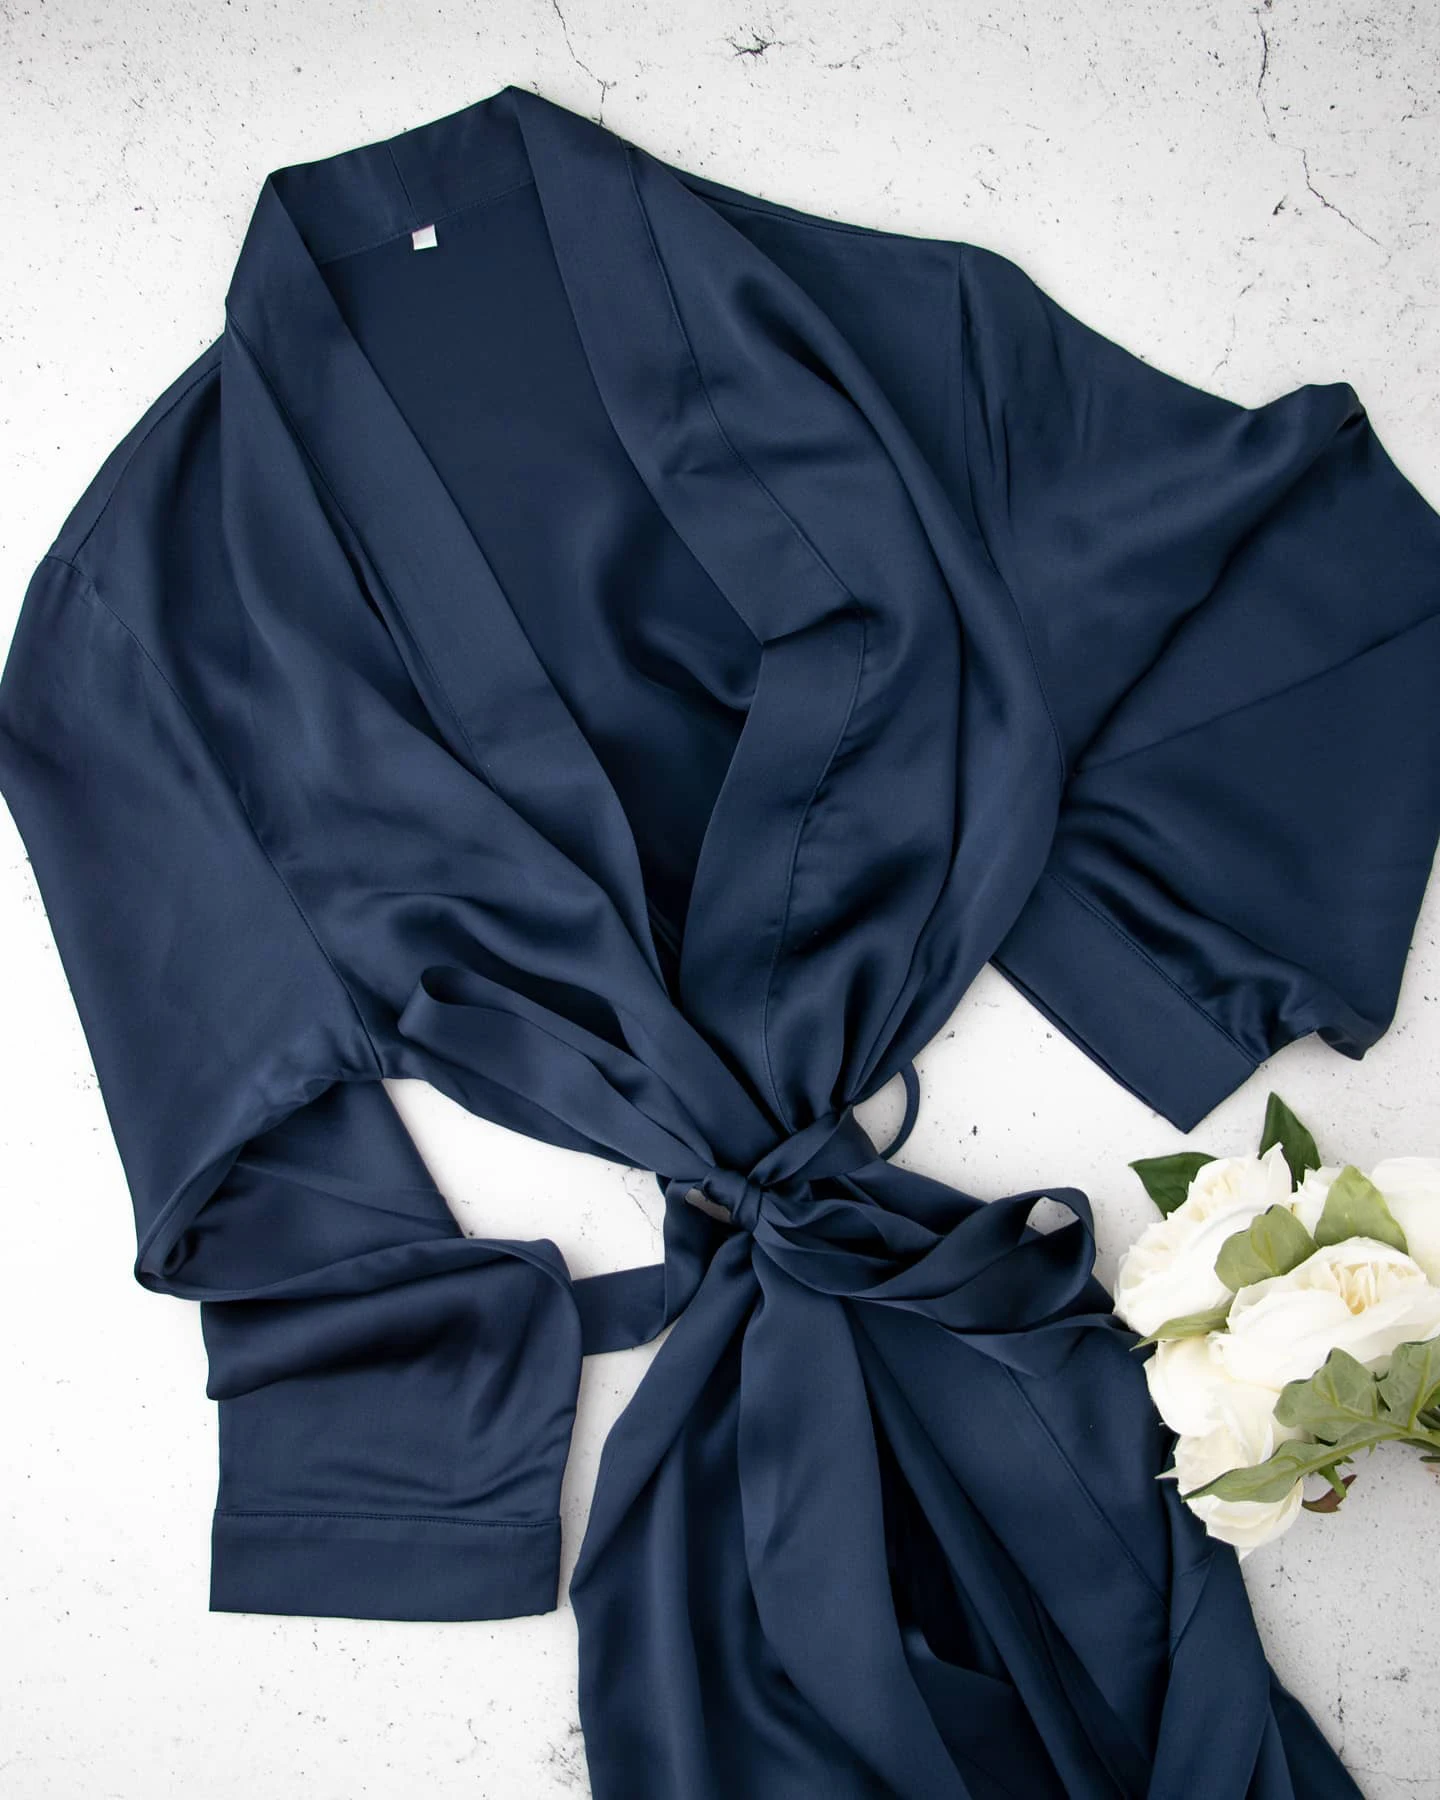 Custom silk pajamas 100% silk pajamas for morning and night are tailored for women